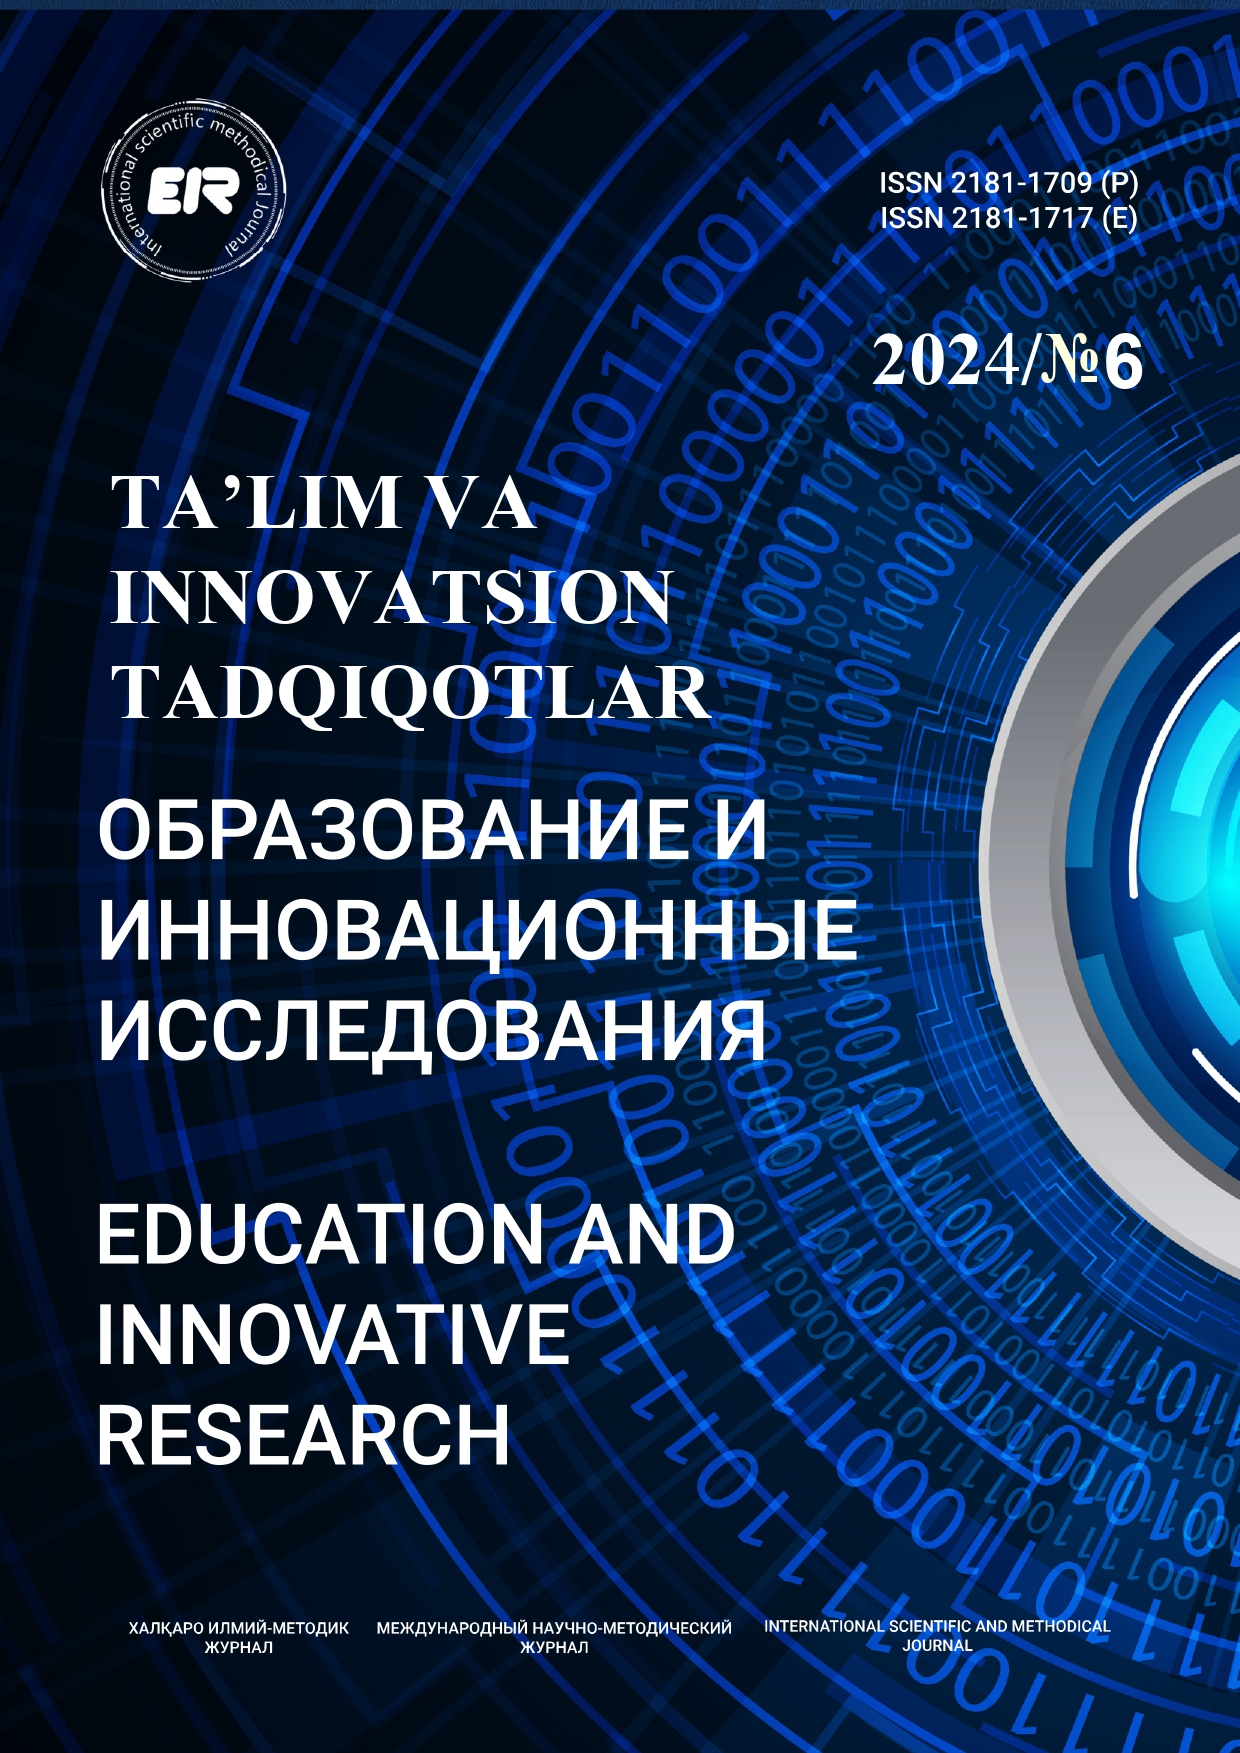 					Показать № 6 (2024): Ta’lim va innovatsion tadqiqotlar xalqaro ilmiy metodik jurnal
				